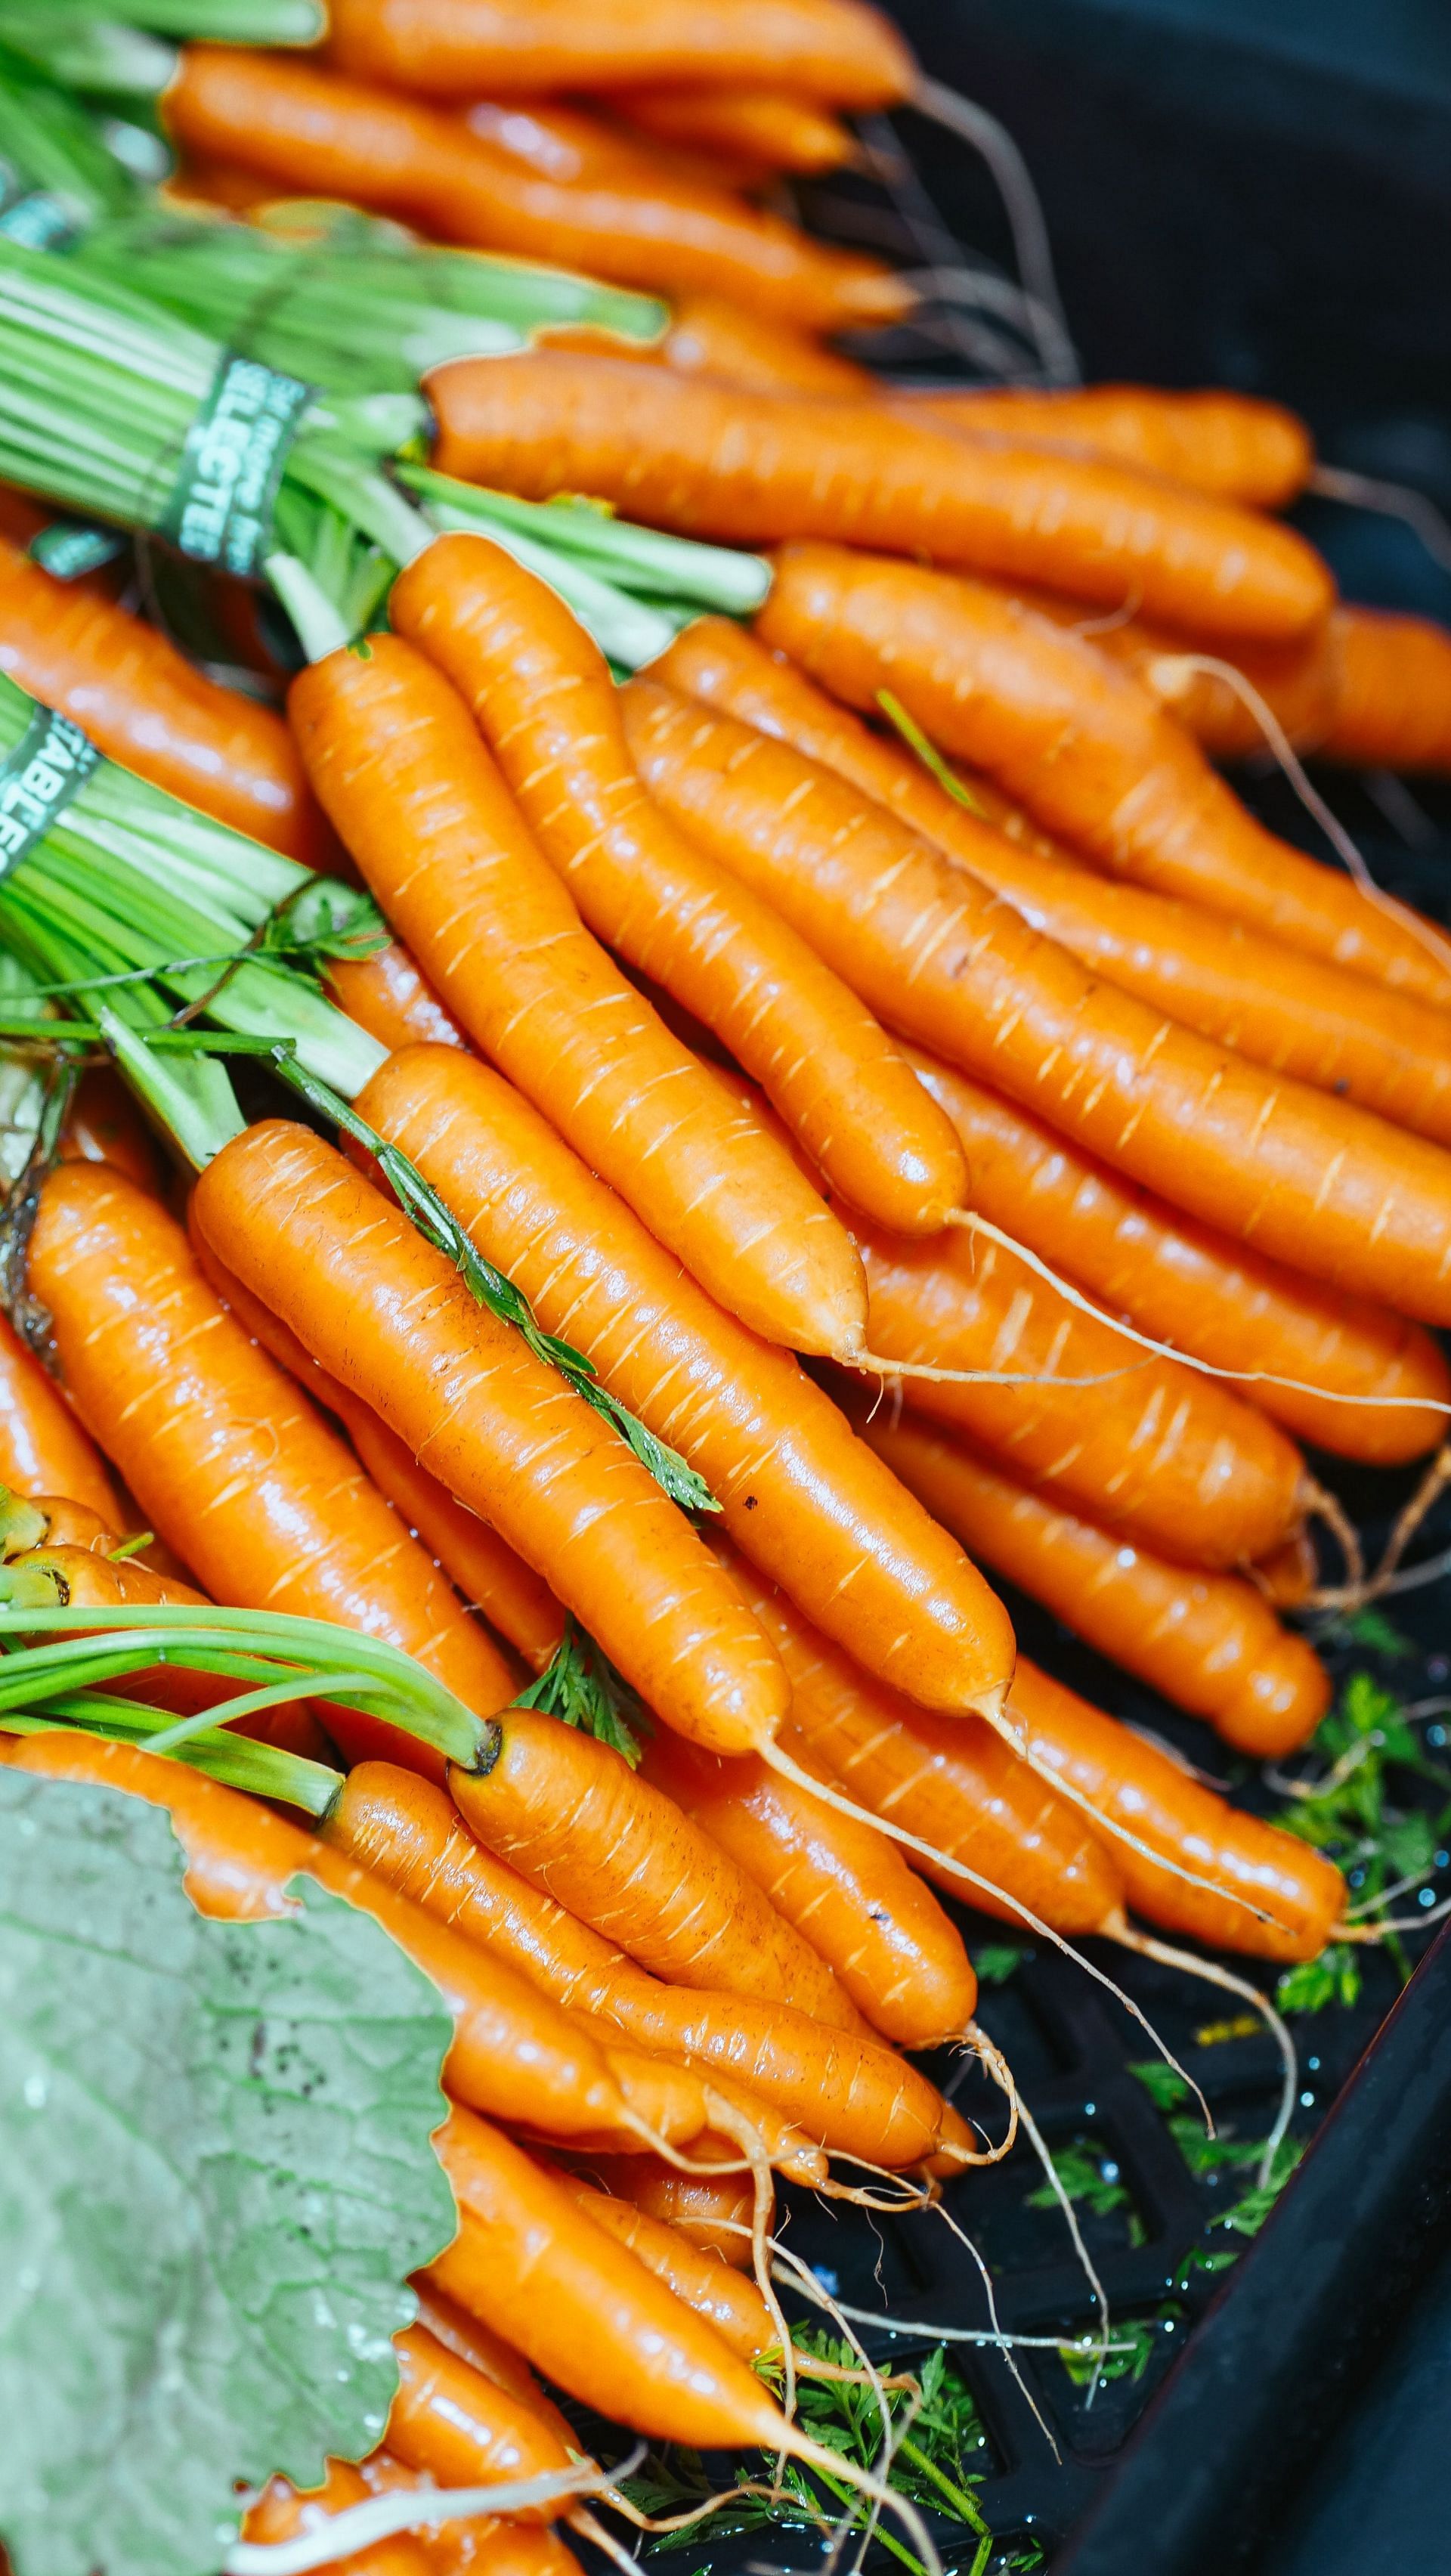 Carrots (Image via Pexels)